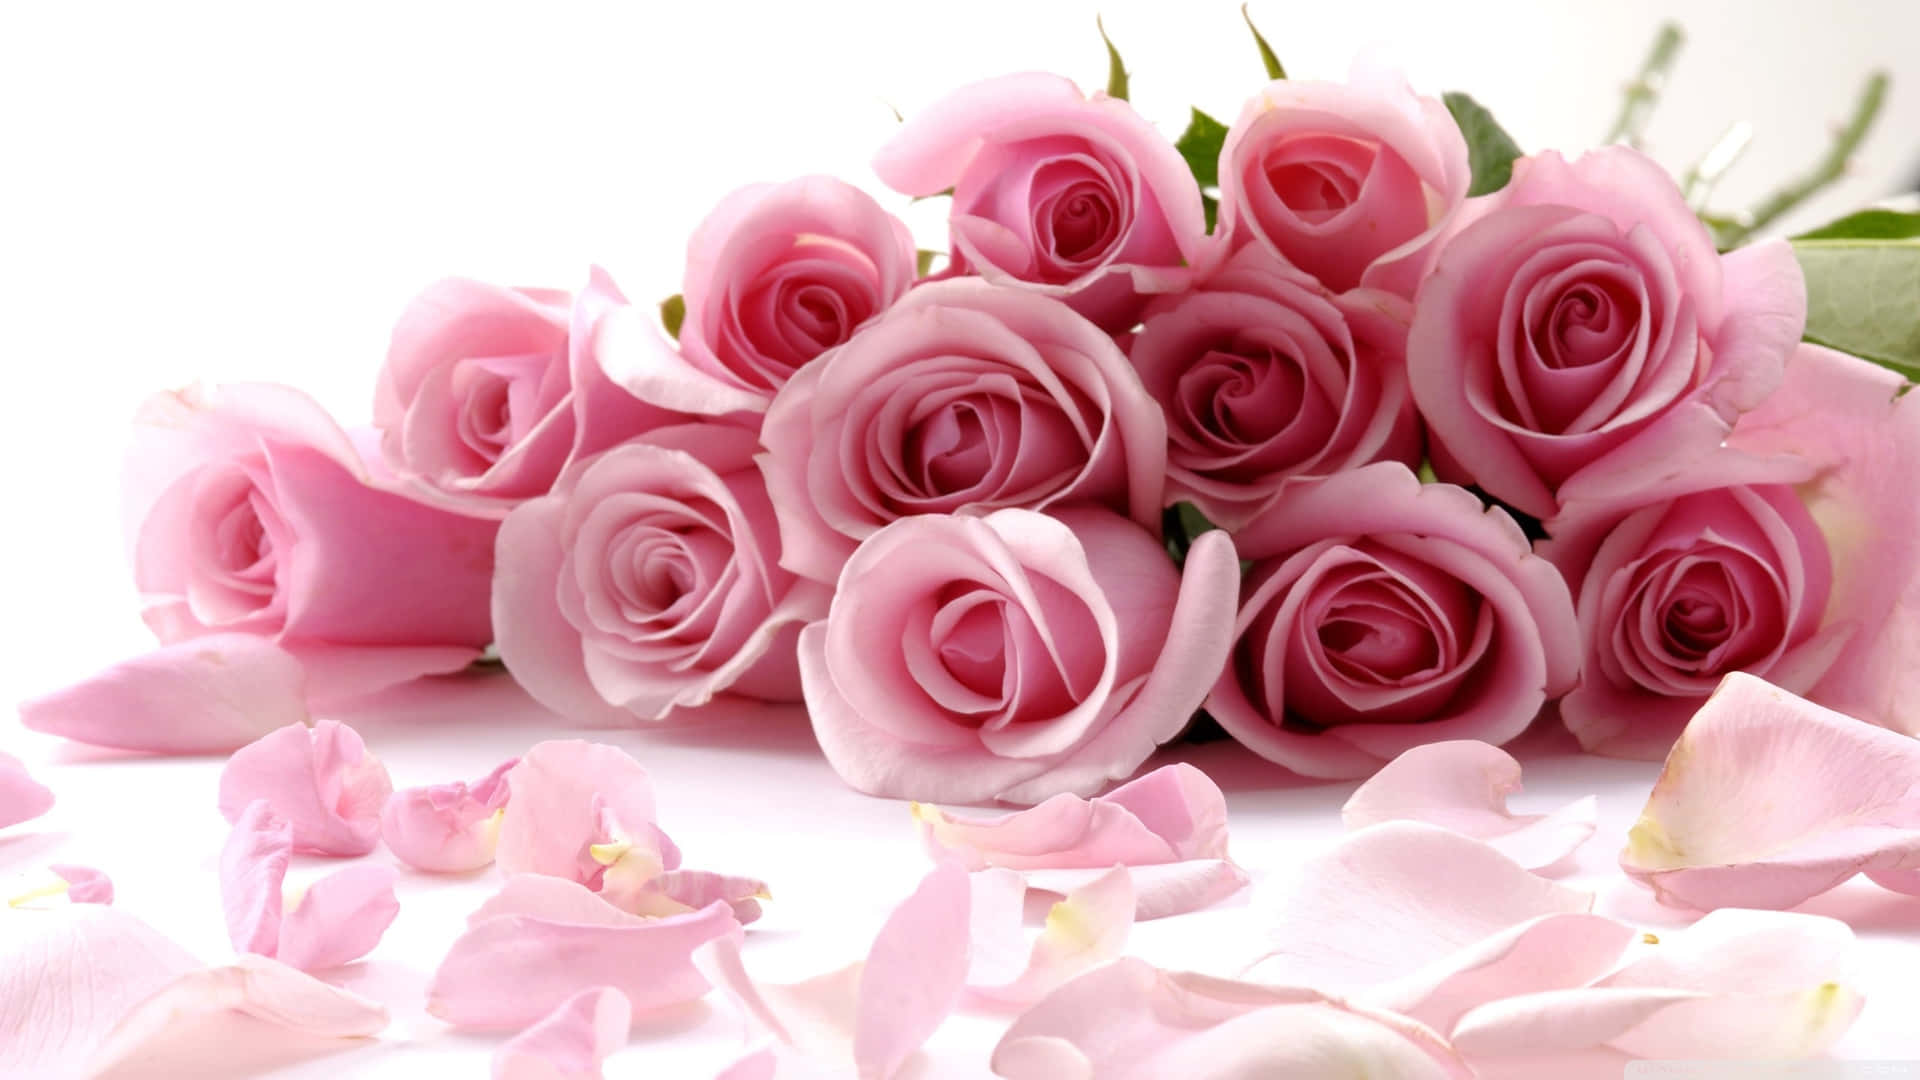 Lovely Pink Garden Rose Bouquet Wallpaper